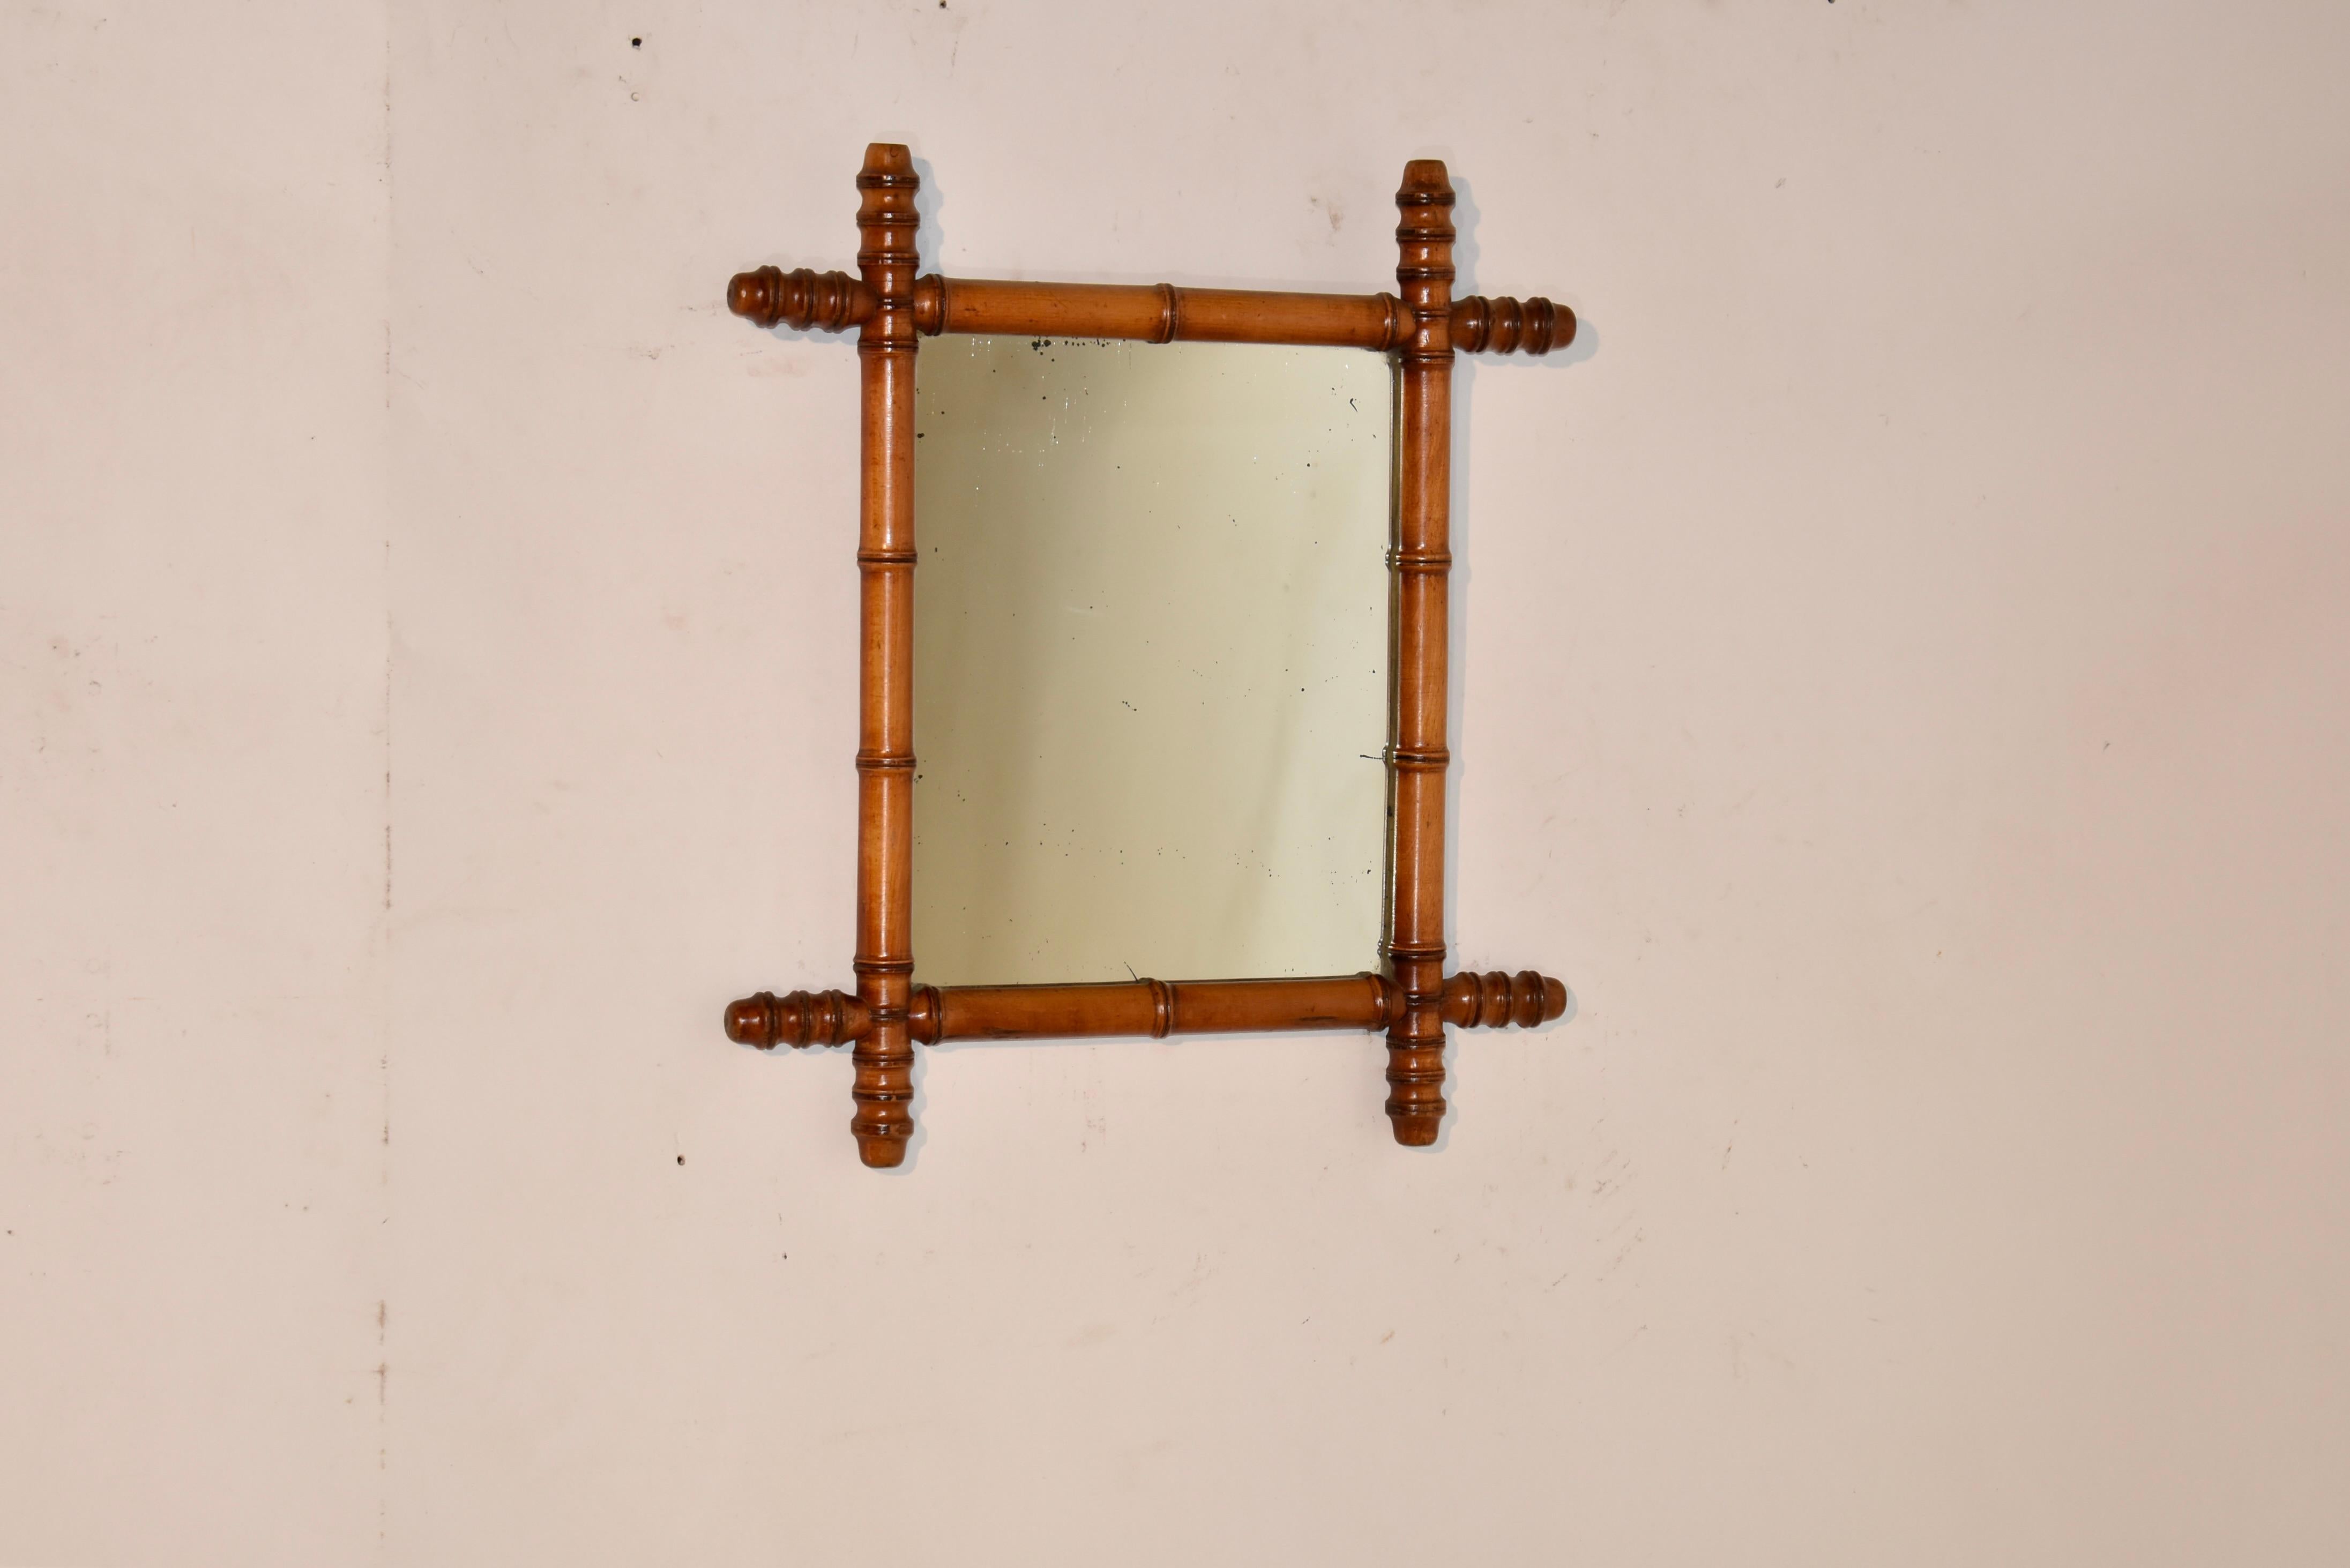 Miroir en cerisier tourné en faux bambou de la fin du 19e siècle.  Le cadre est tourné pour imiter le bambou et entoure ce qui semble être son miroir d'origine.  Ils sont très beaux, surtout en groupe.